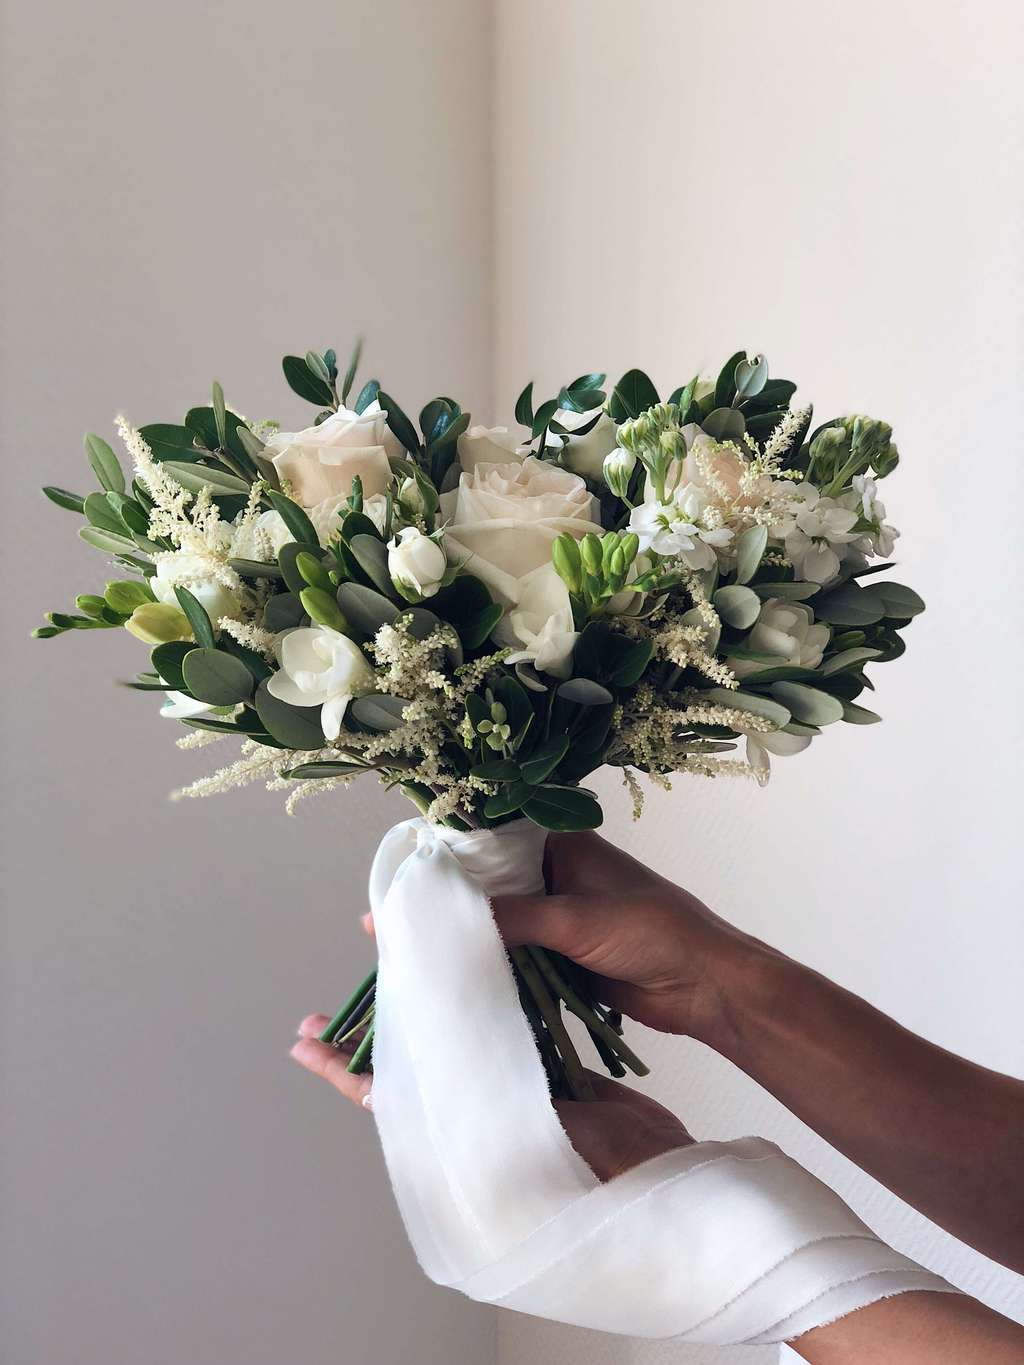 Как сделать свадебный букет невесты своими руками? — Свадебный портал Marry